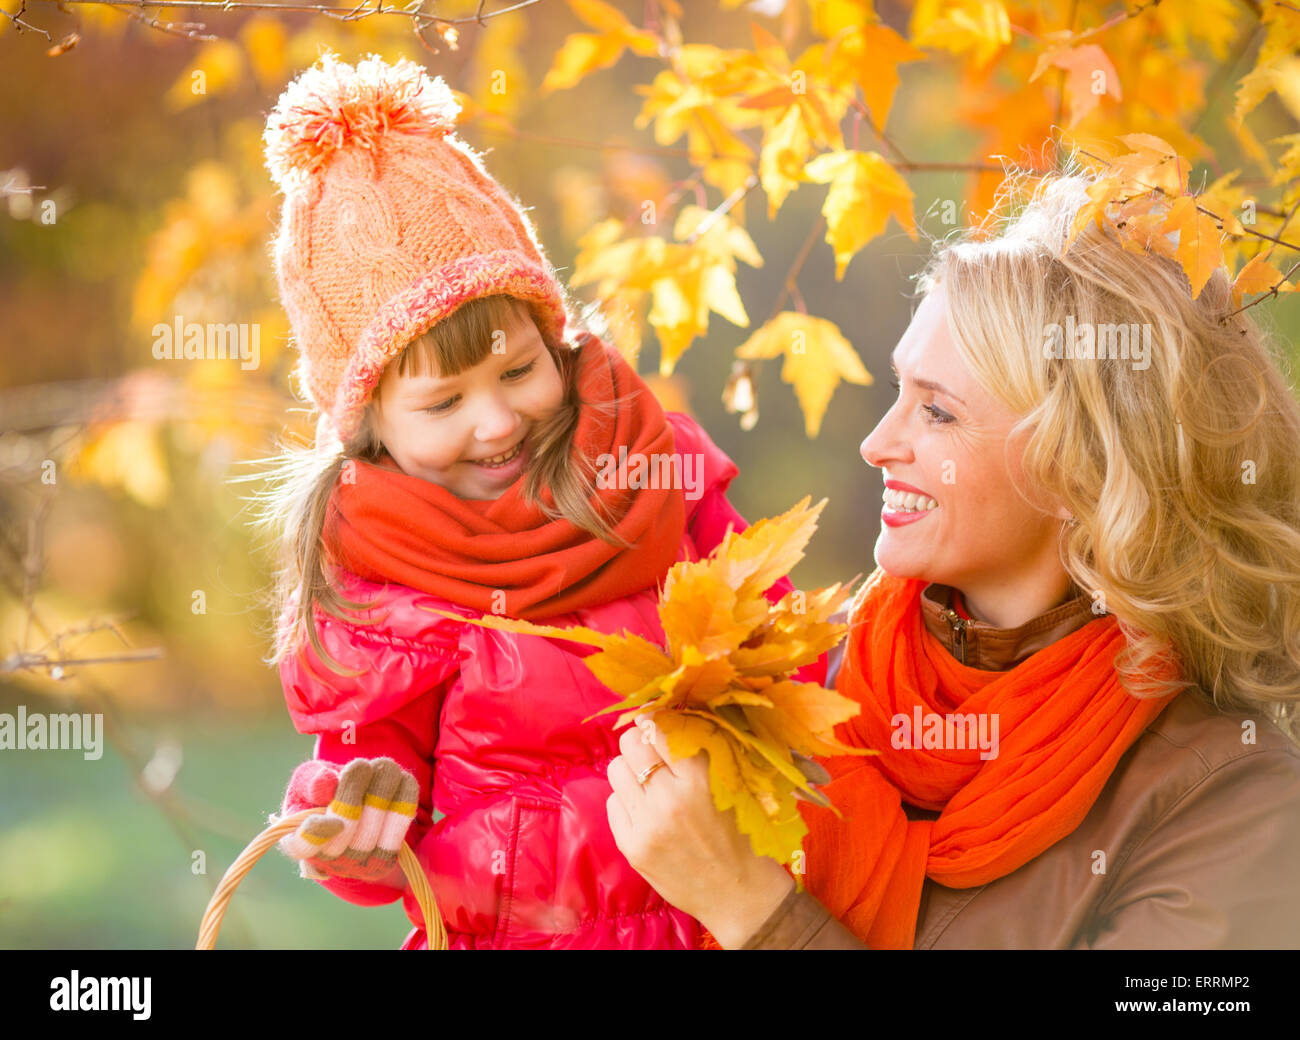 Smiling mother et de plein air pour enfants avec des feuilles jaunes d'automne Banque D'Images